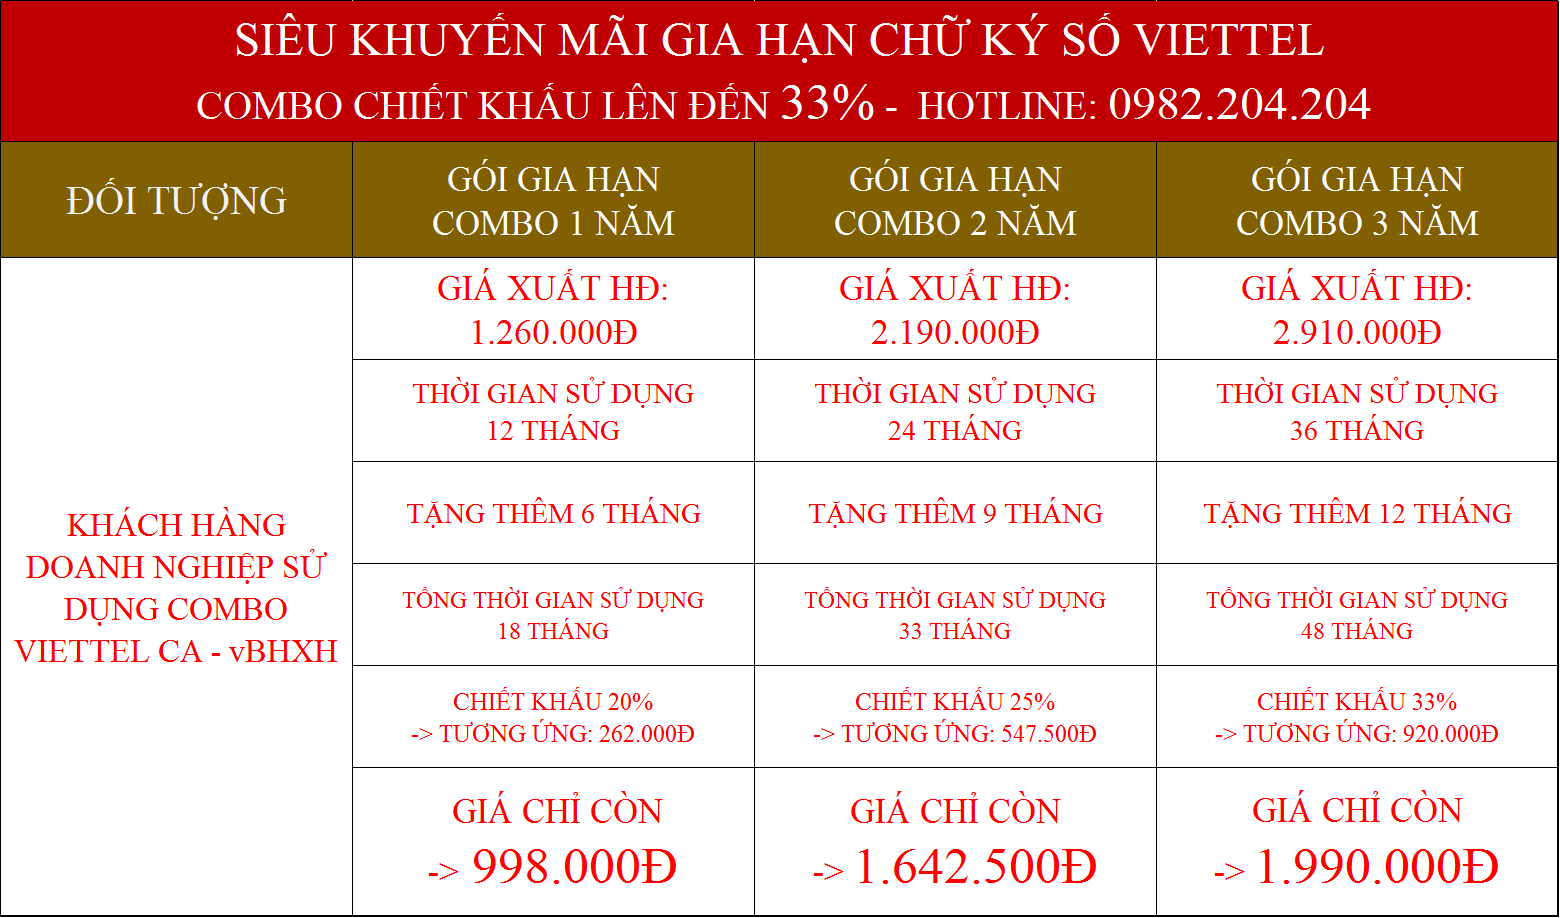 Gia Hạn chữ ký số Viettel Nam Định combo kèm vBHXH